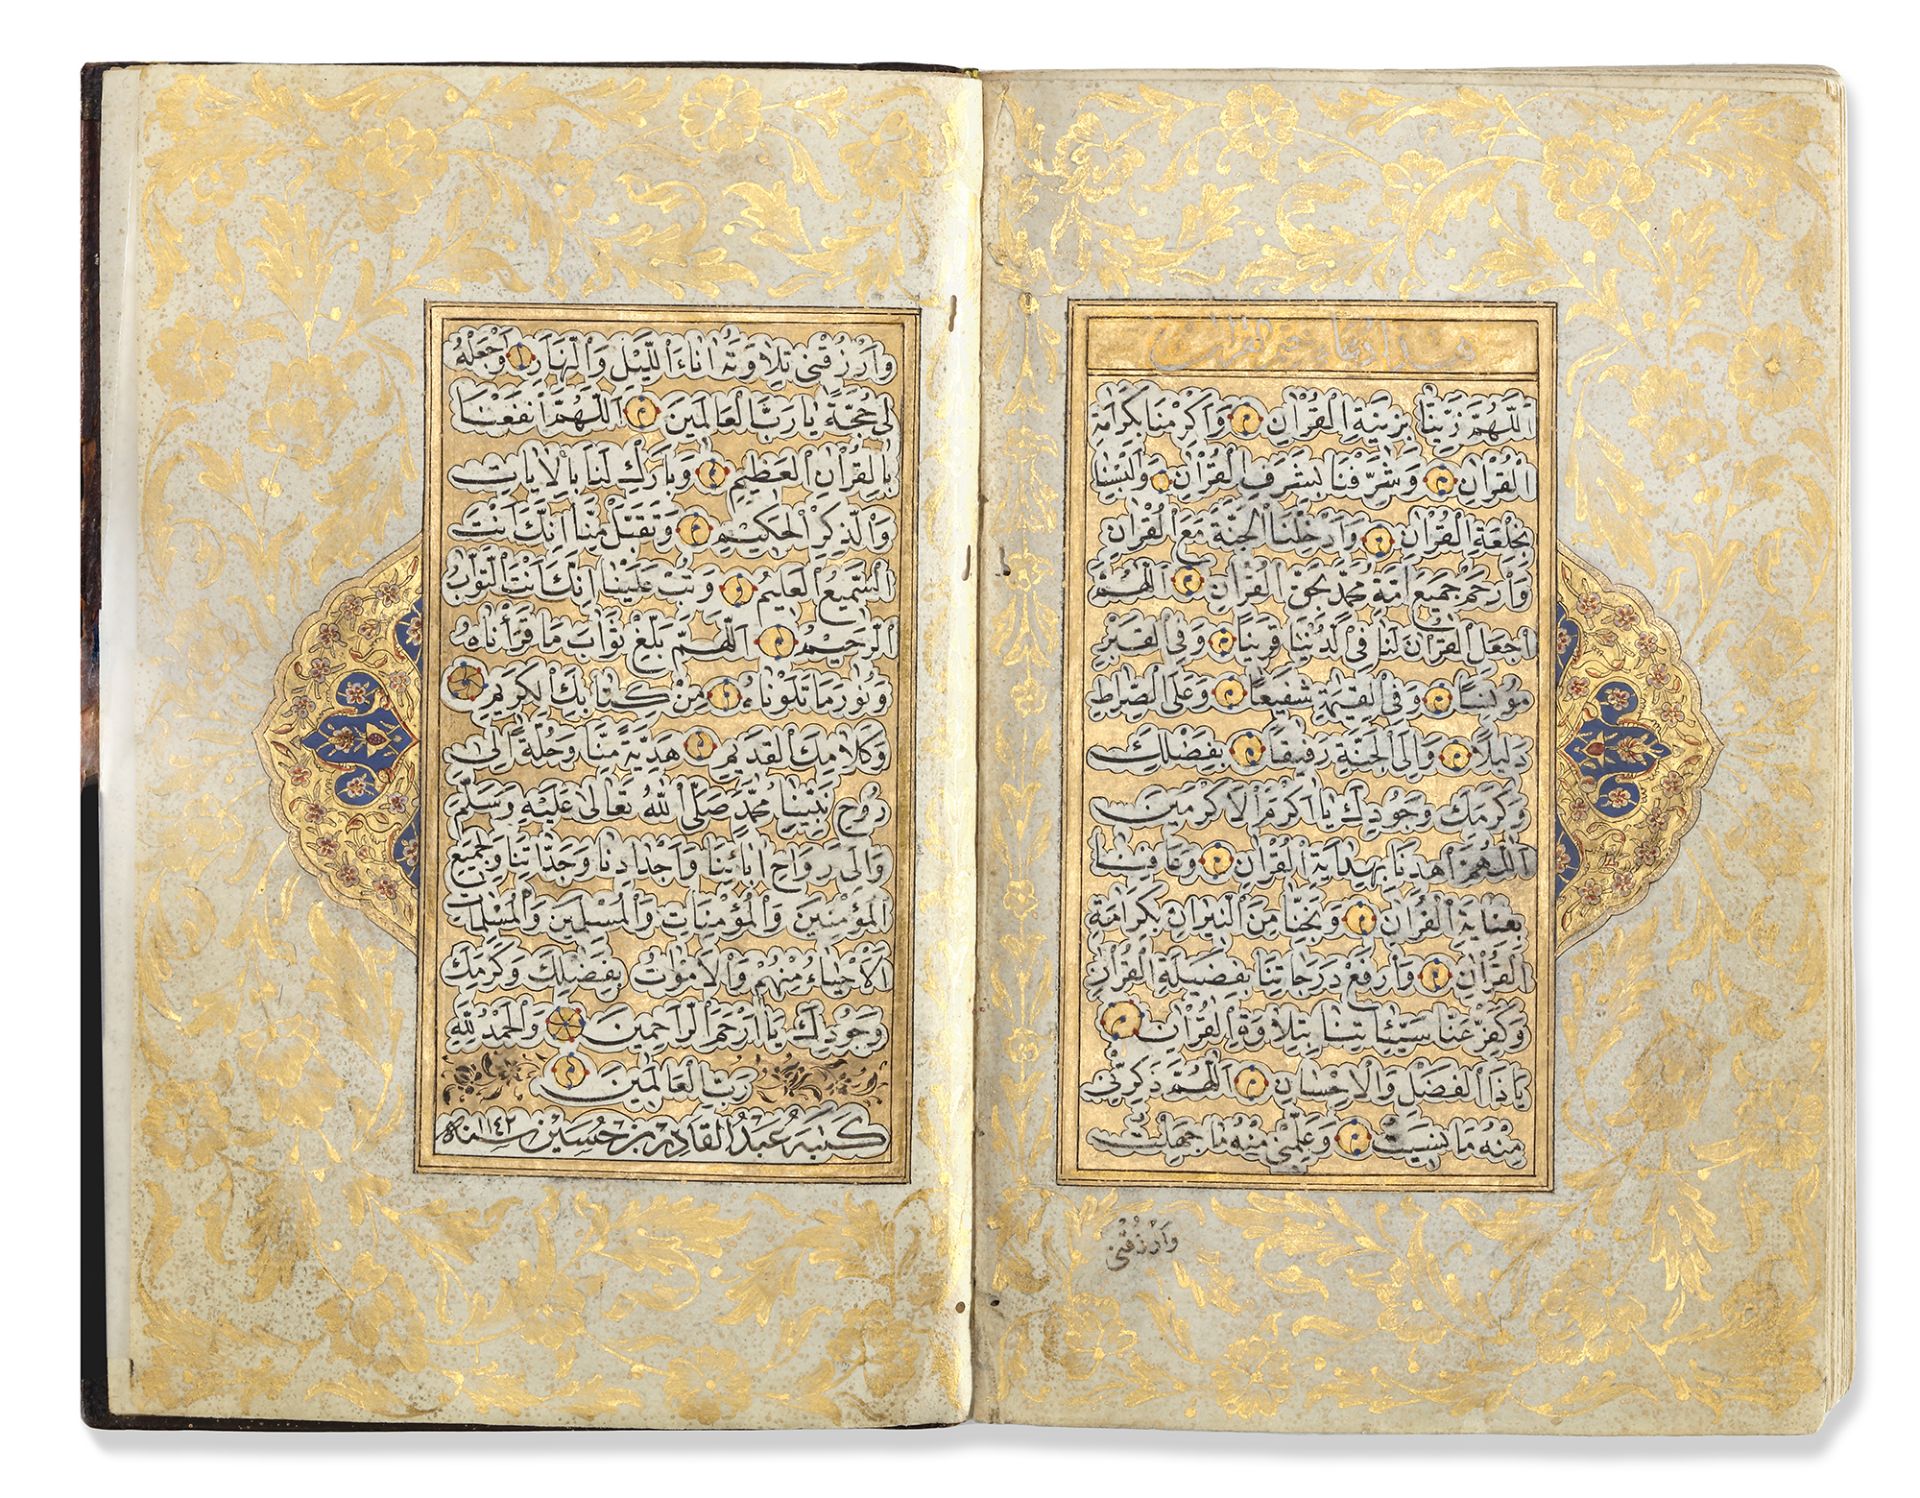 A QURAN SIGNED BY SEYYID ABDULKADIR EFENDI, OTTOMAN TURKEY, DATED 1142 AH/1729 AD - Image 2 of 5